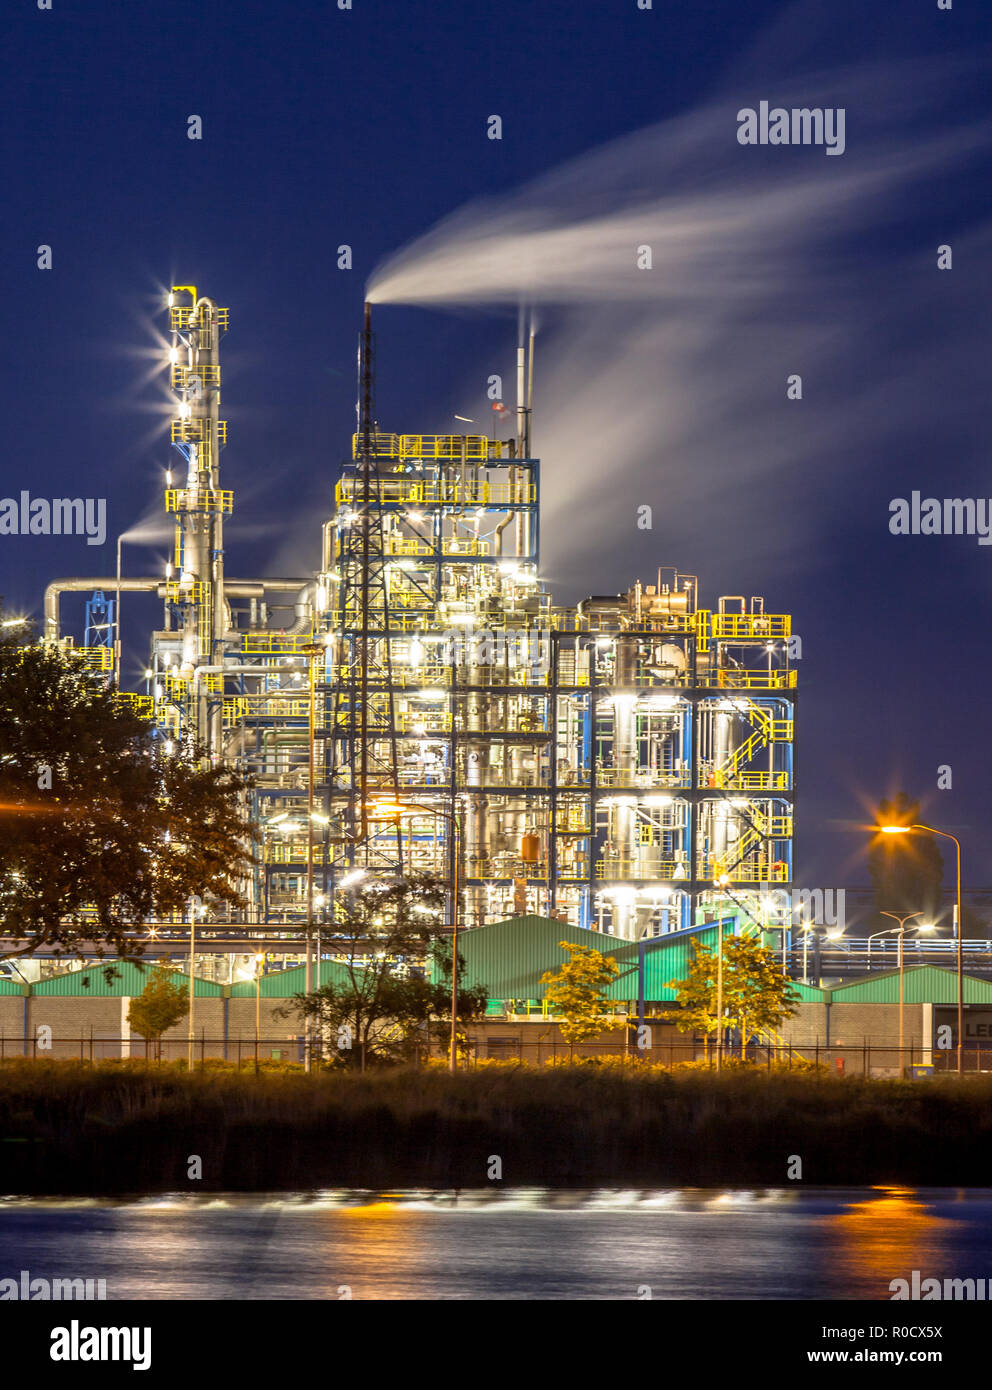 Scena notturna del dettaglio di una sostanza chimica pesante impianto industriale con mazework di tubi e tubazioni nel crepuscolo Foto Stock